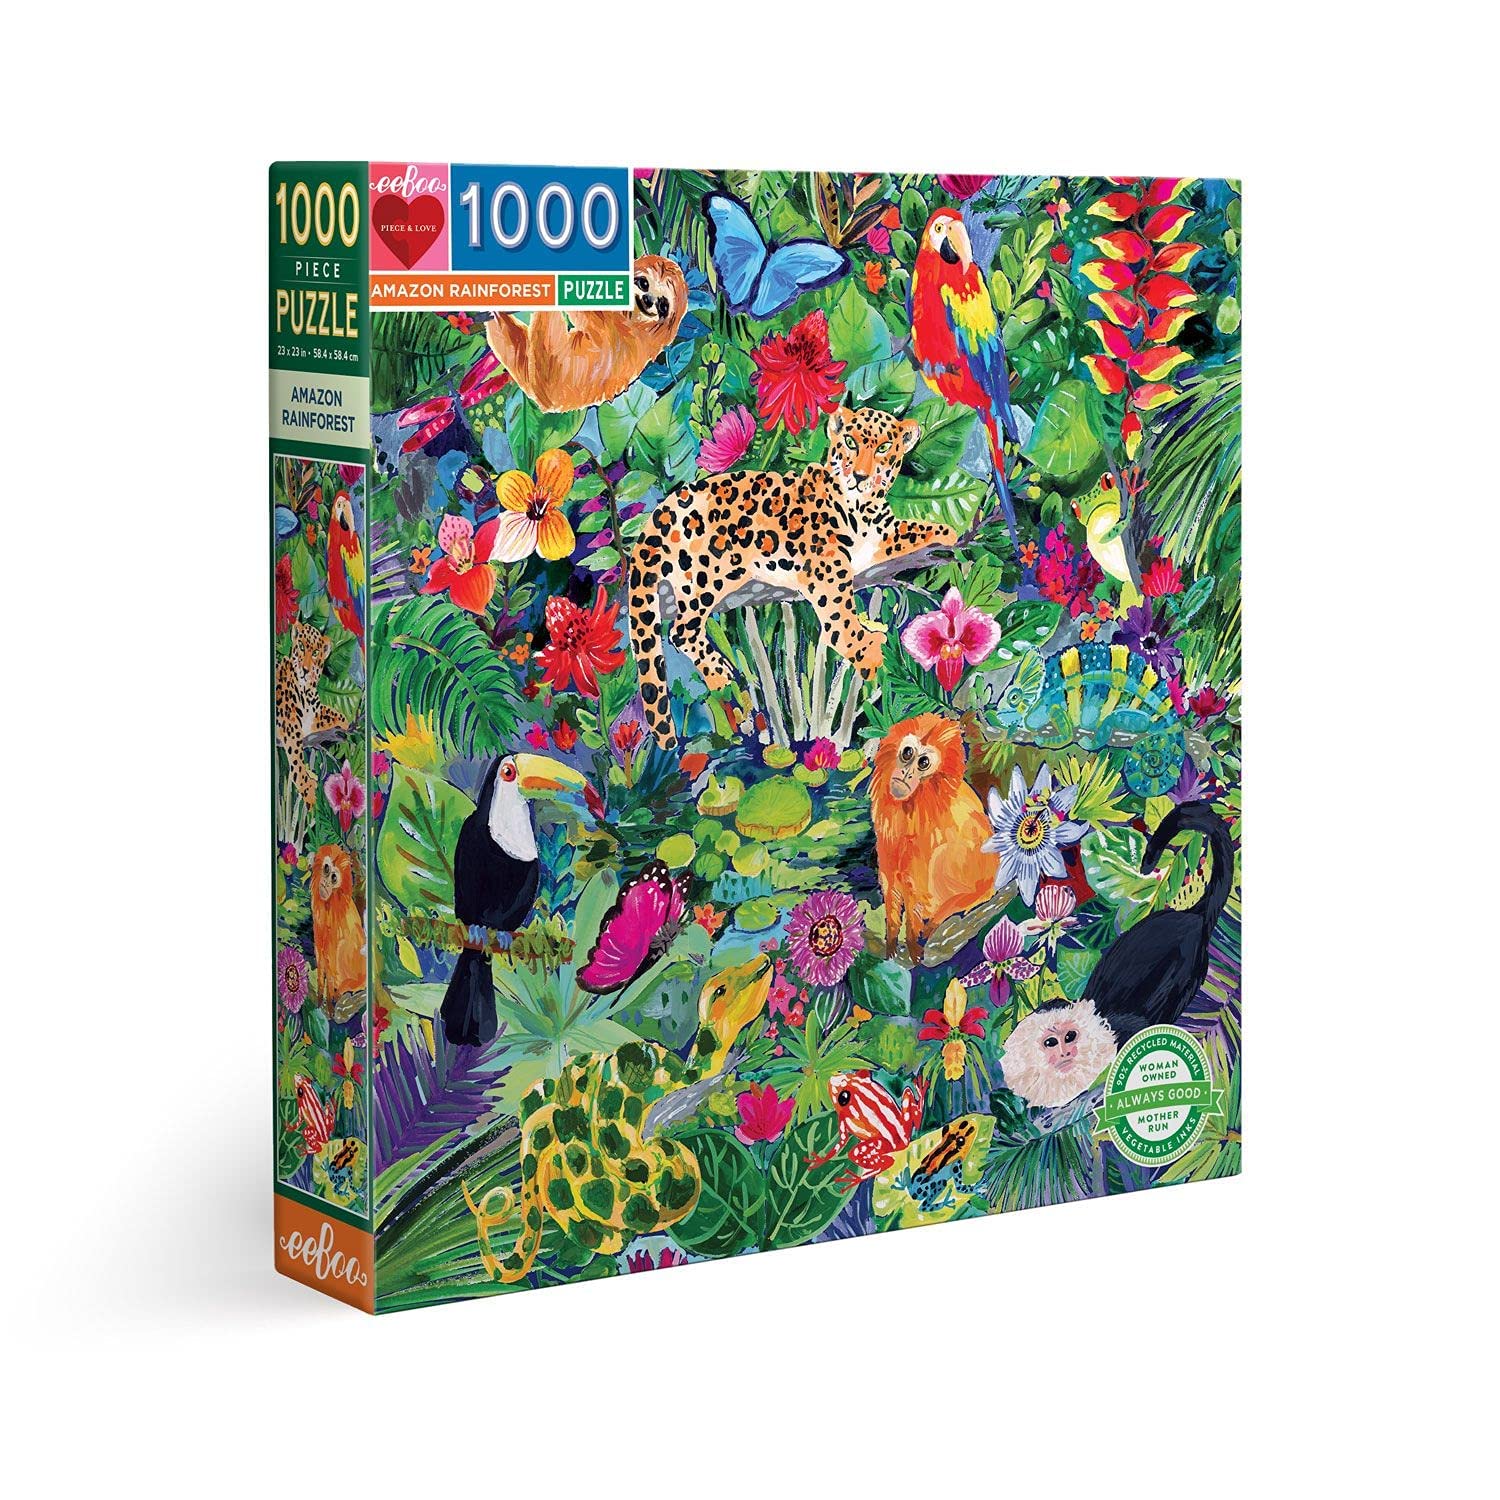 bon prix eeBoo Amazon Rainforest 1000 pièces Animaux Carton recyclé pour Adulte-Puzzle sur la forêt amazonienne, PZTAZR, Multicolore y3GpecYRl en France Online